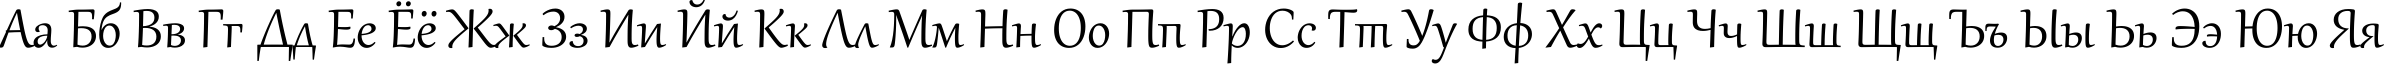 Пример написания русского алфавита шрифтом Gabriola